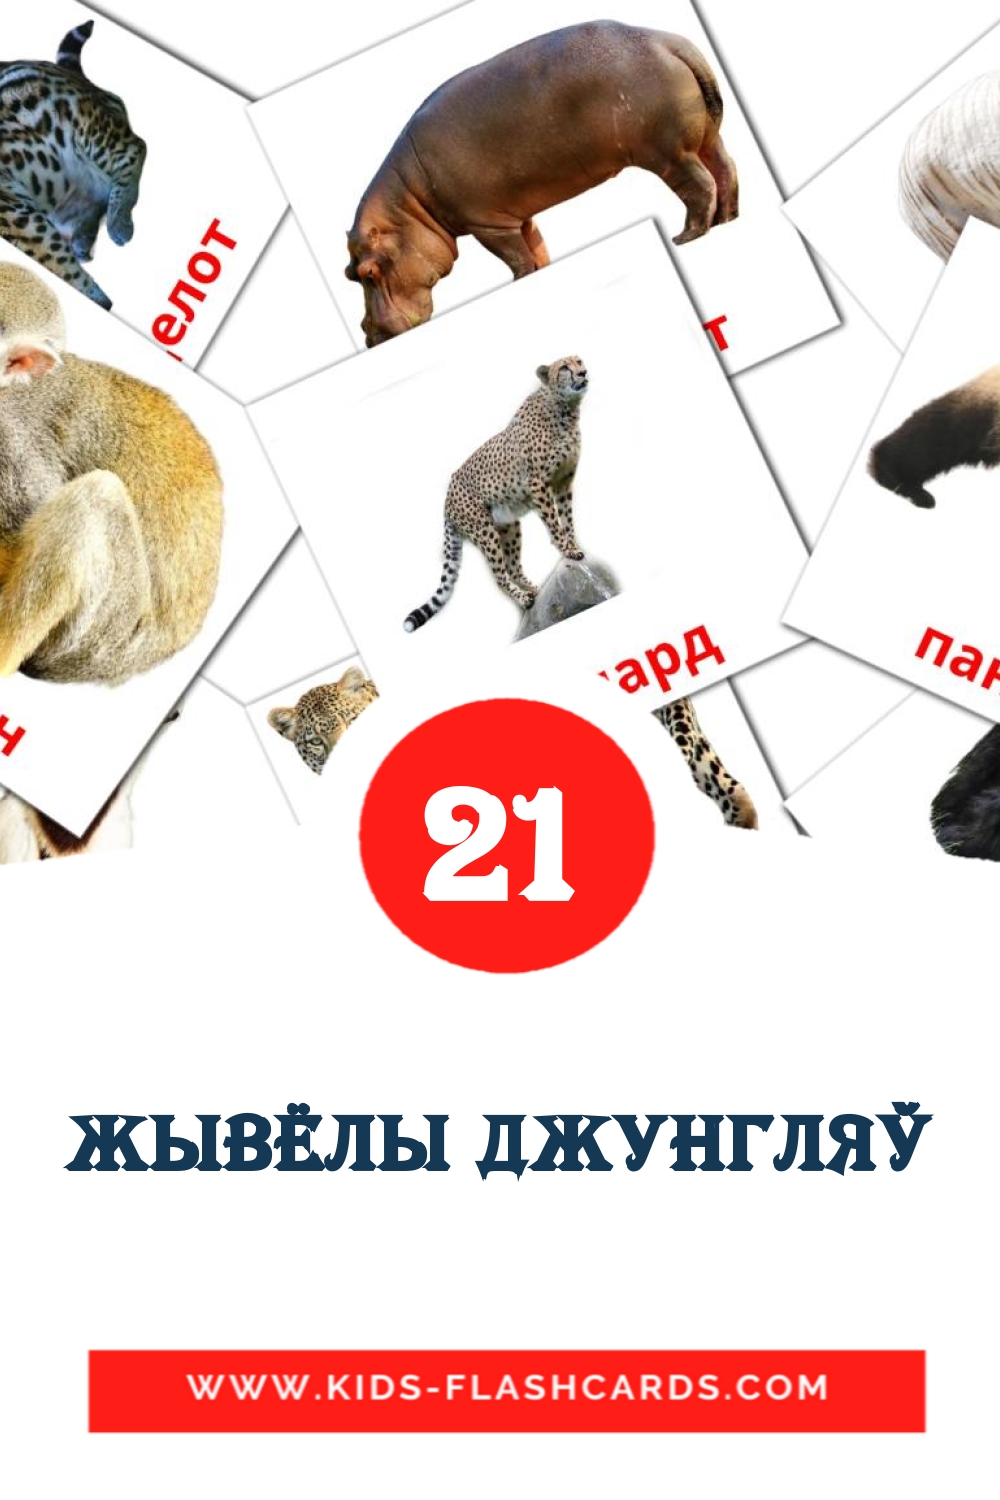 21 cartes illustrées de Жывёлы джунгляў pour la maternelle en biélorusse